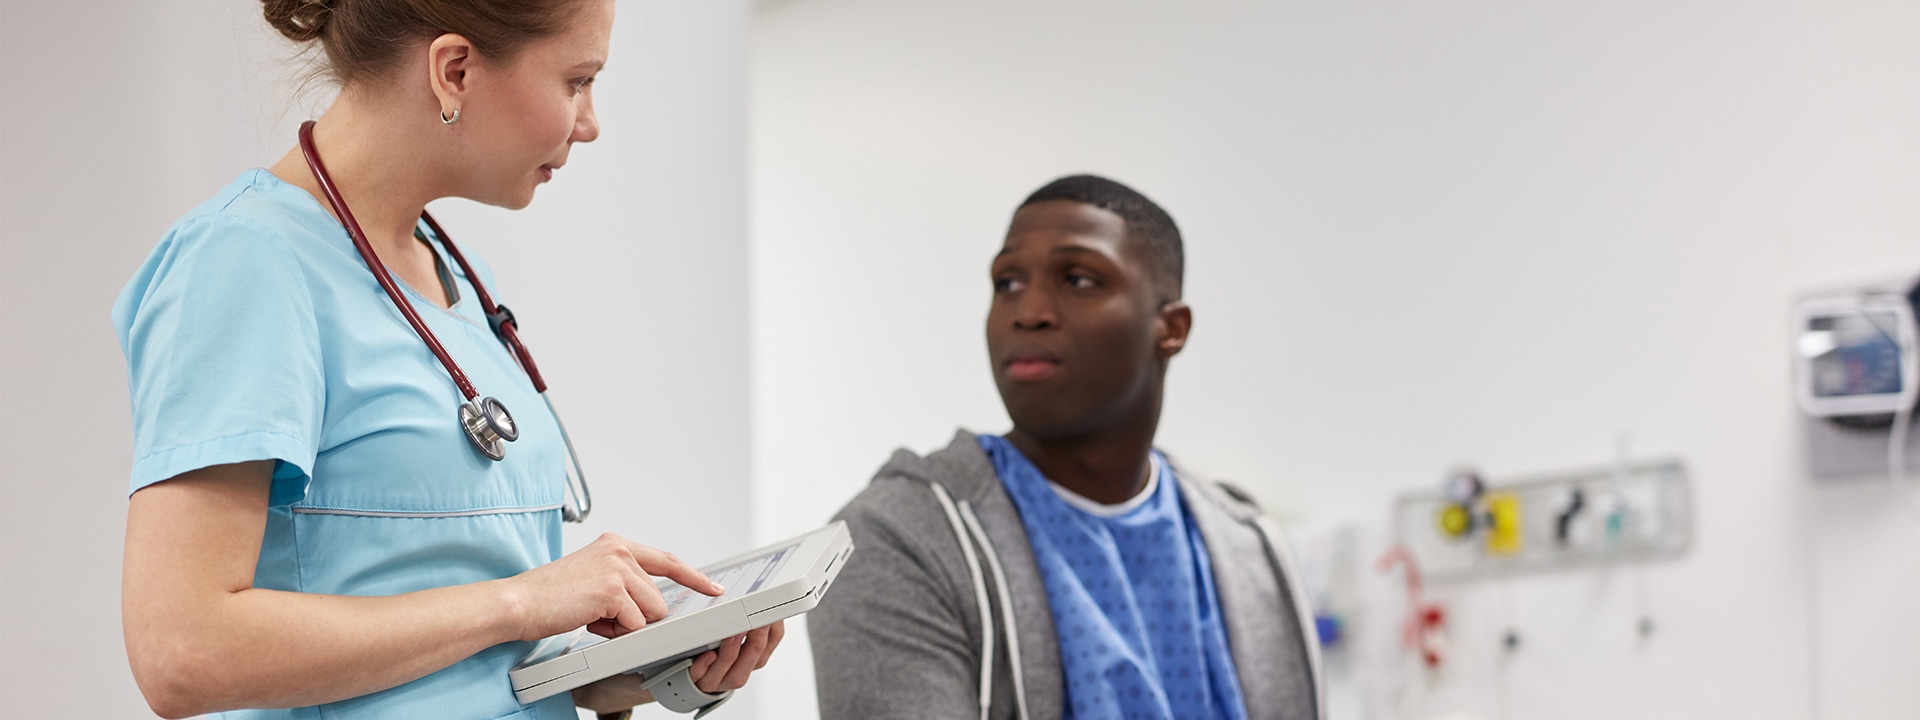 Egy ápoló egy Surface Pro készüléket használ a betegfelvételhez egy klinikán